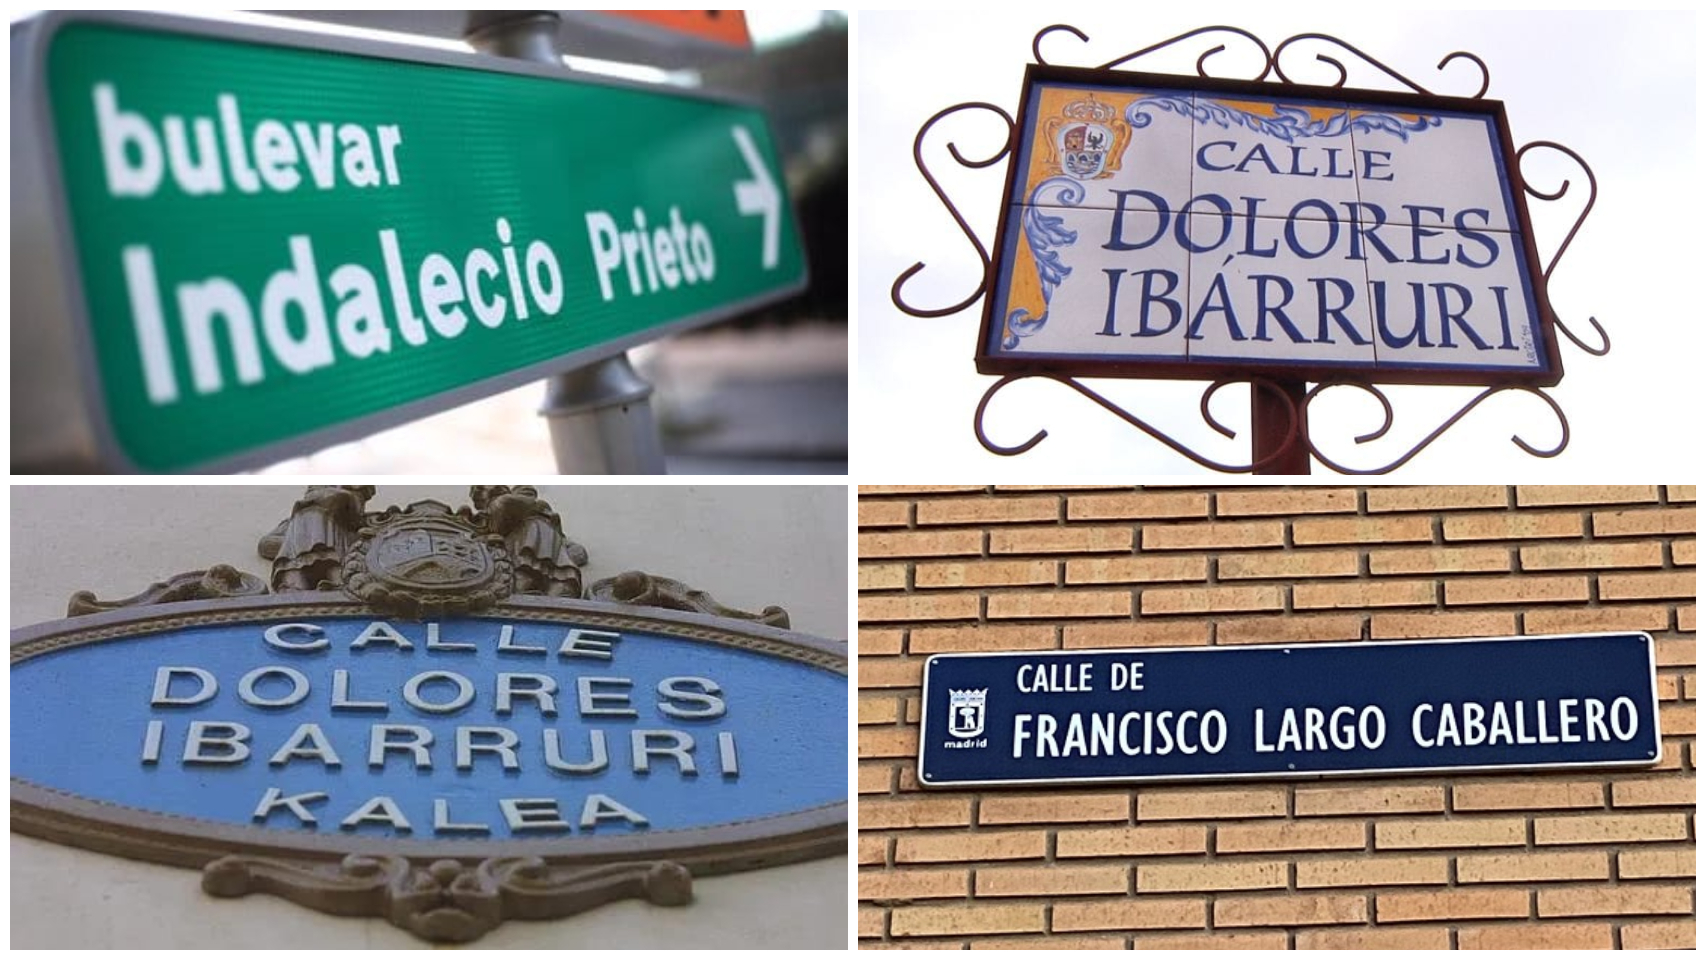 Cuatro señales de calles dedicadas a Indalecio Prieto, Dolores Ibárruri y Francisco Largo Caballero.